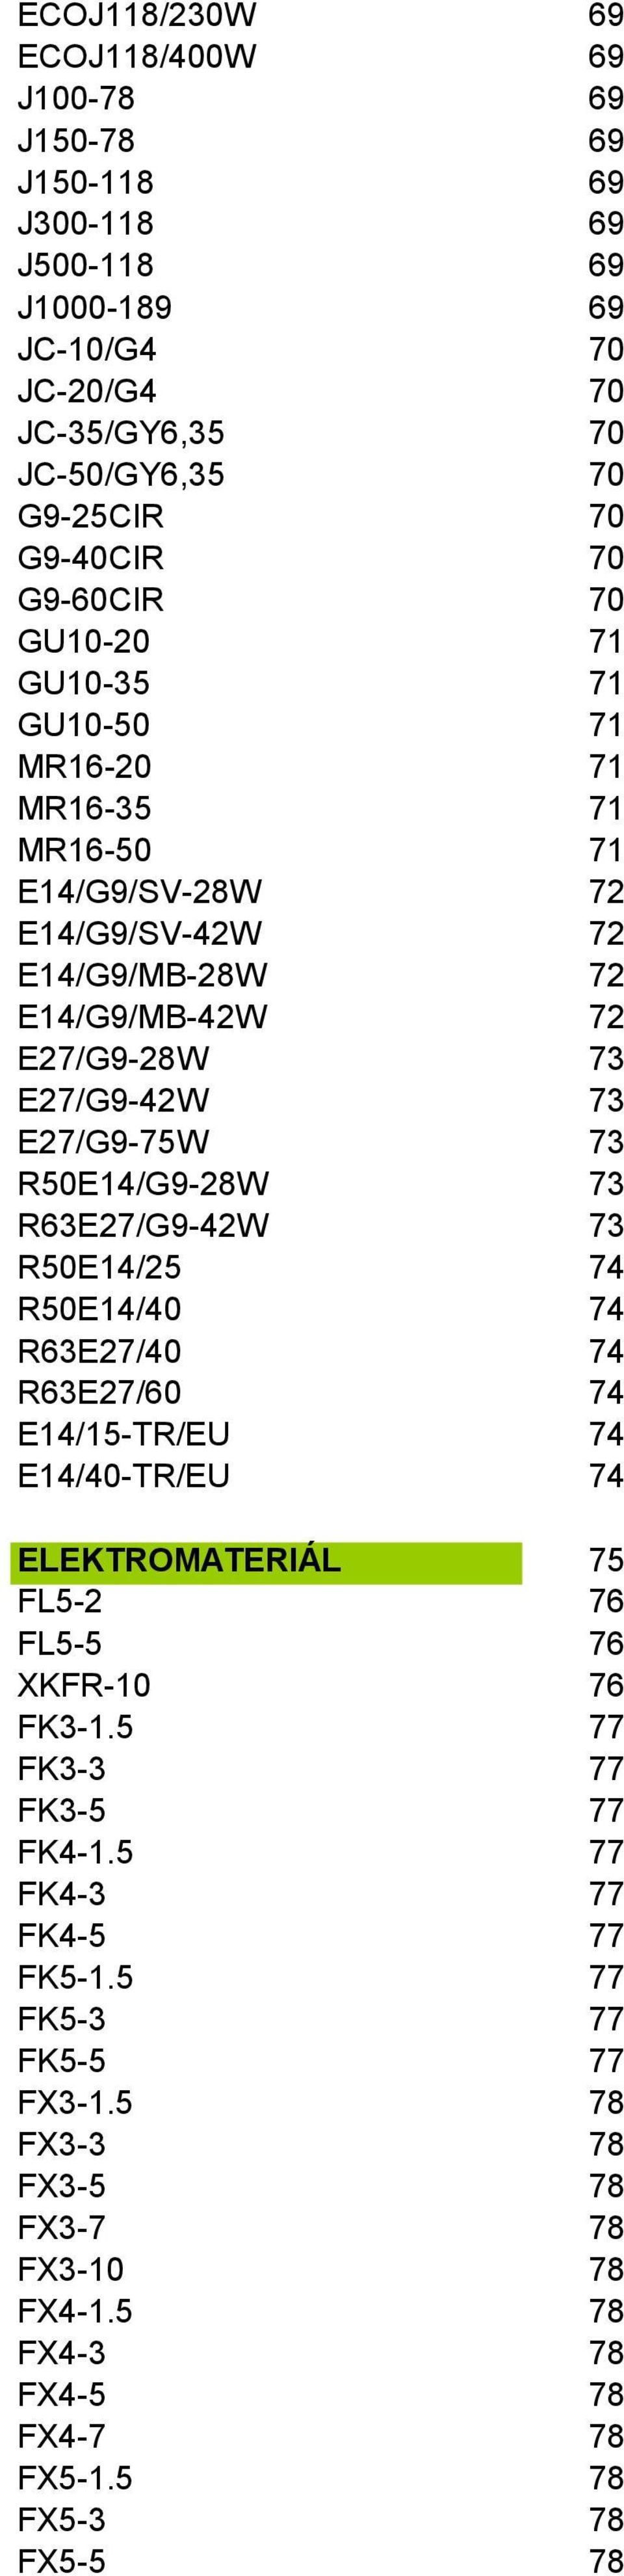 E27/G9-75W 73 R50/G9-28W 73 R63E27/G9-42W 73 R50/25 74 R50/40 74 R63E27/40 74 R63E27/60 74 /15-TR/EU 74 /40-TR/EU 74 ELEKTROMATERIÁL 75 FL5-2 76 FL5-5 76 XKFR-10 76 FK3-1.